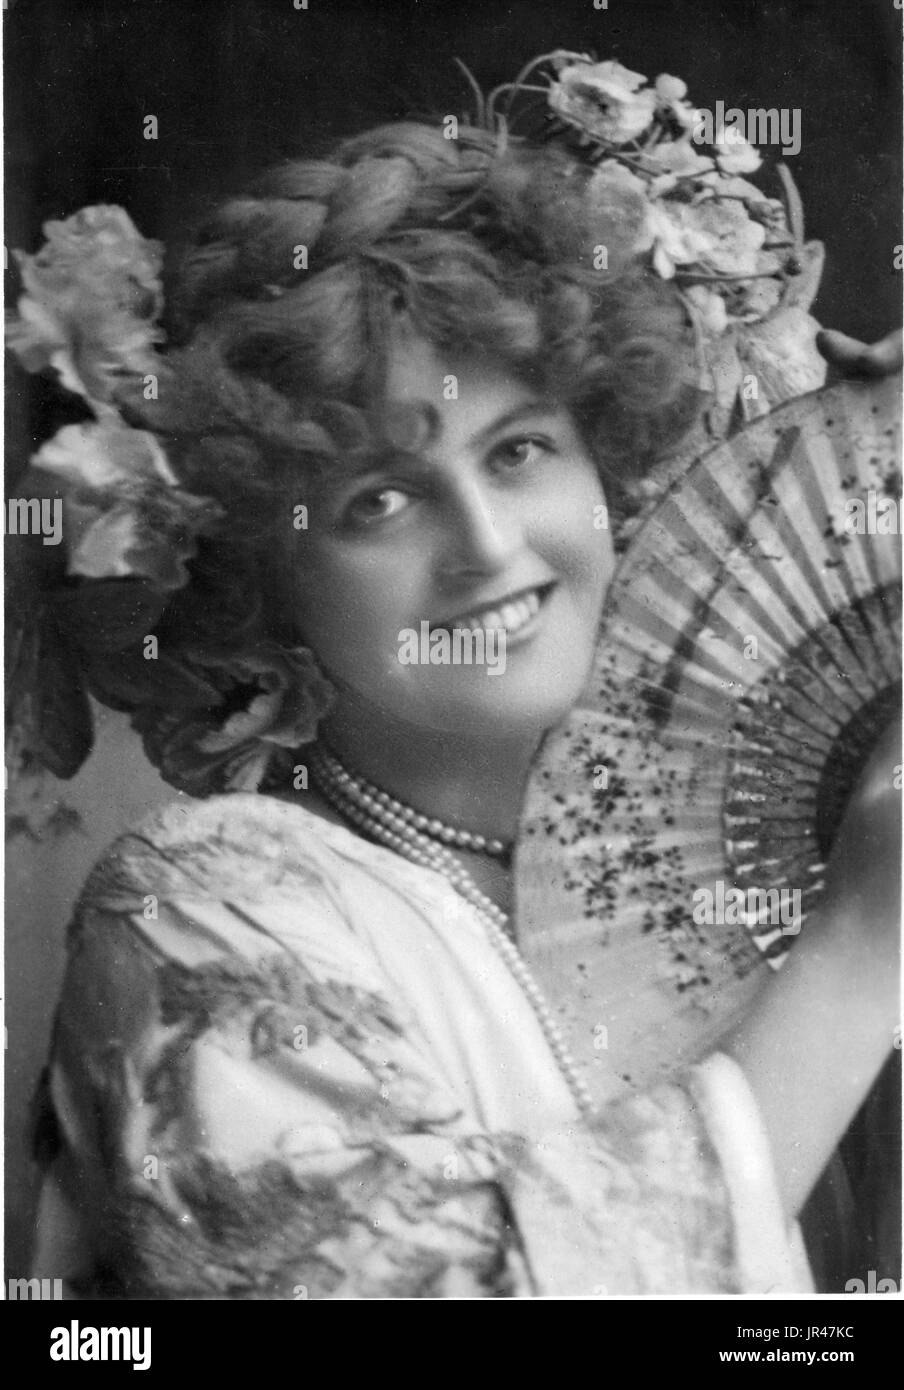 Mlle Marie Studholme, Edwardian actrice (10 septembre 1872 - 10 mars 1930), né comme Caroline Maria Lupton ou Marion Lupton, une actrice et chanteuse connue pour son soutien à l'occasion et avec des rôles dans des comédies musicales de l'époque victorienne et édouardienne. Ses caractéristiques attrayantes fait d'elle l'un des plus populaires de son époque beautés carte postale. Banque D'Images